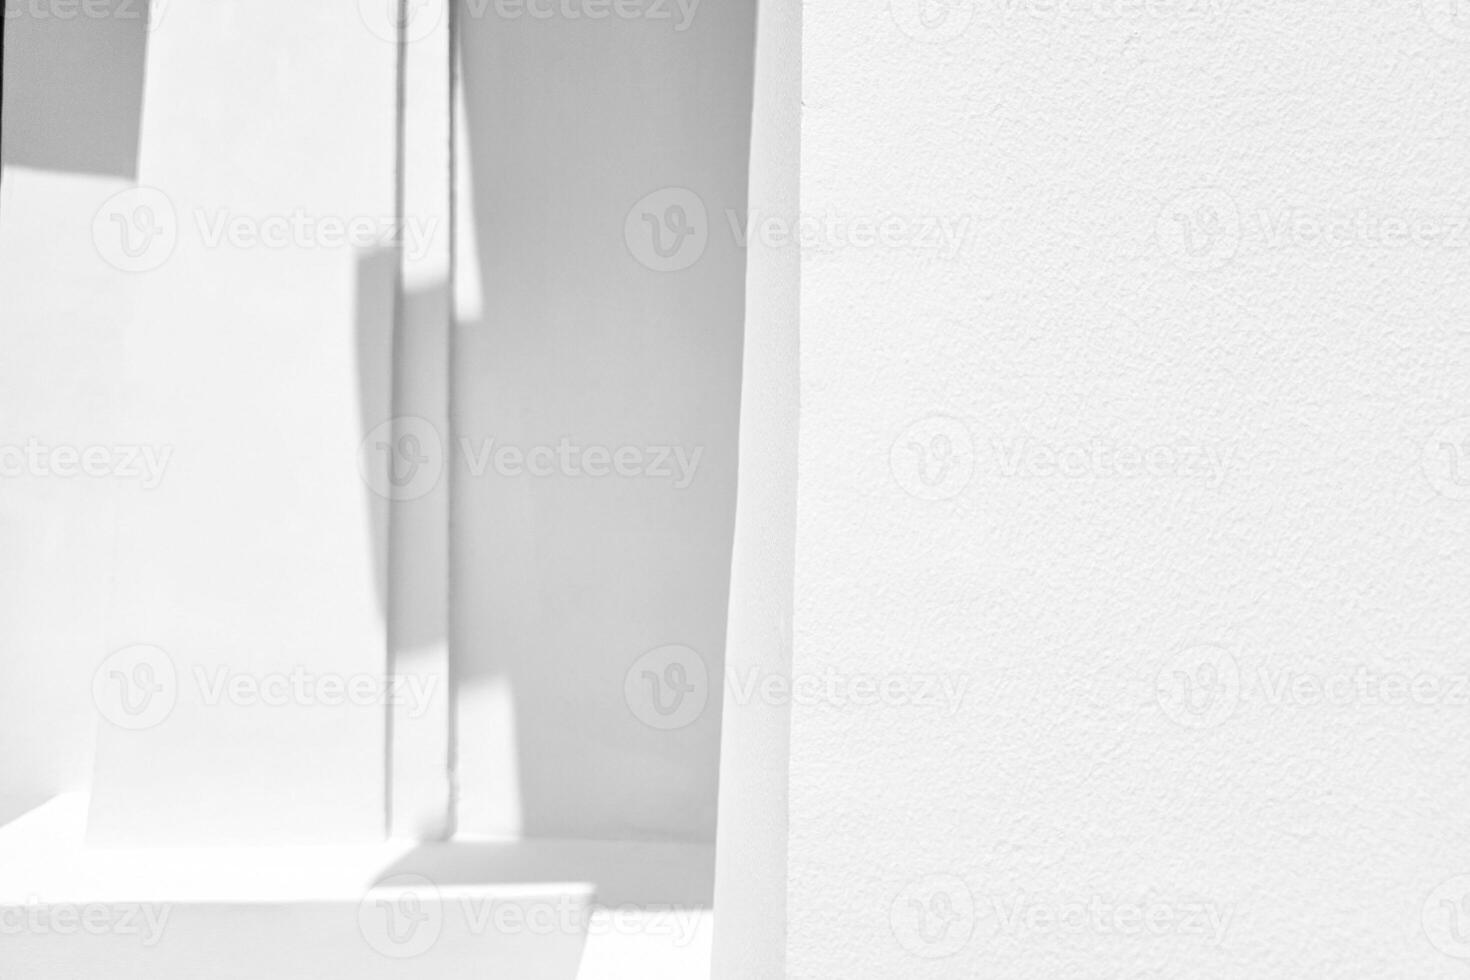 branco reboco parede com natural luz e sombra fundo. foto